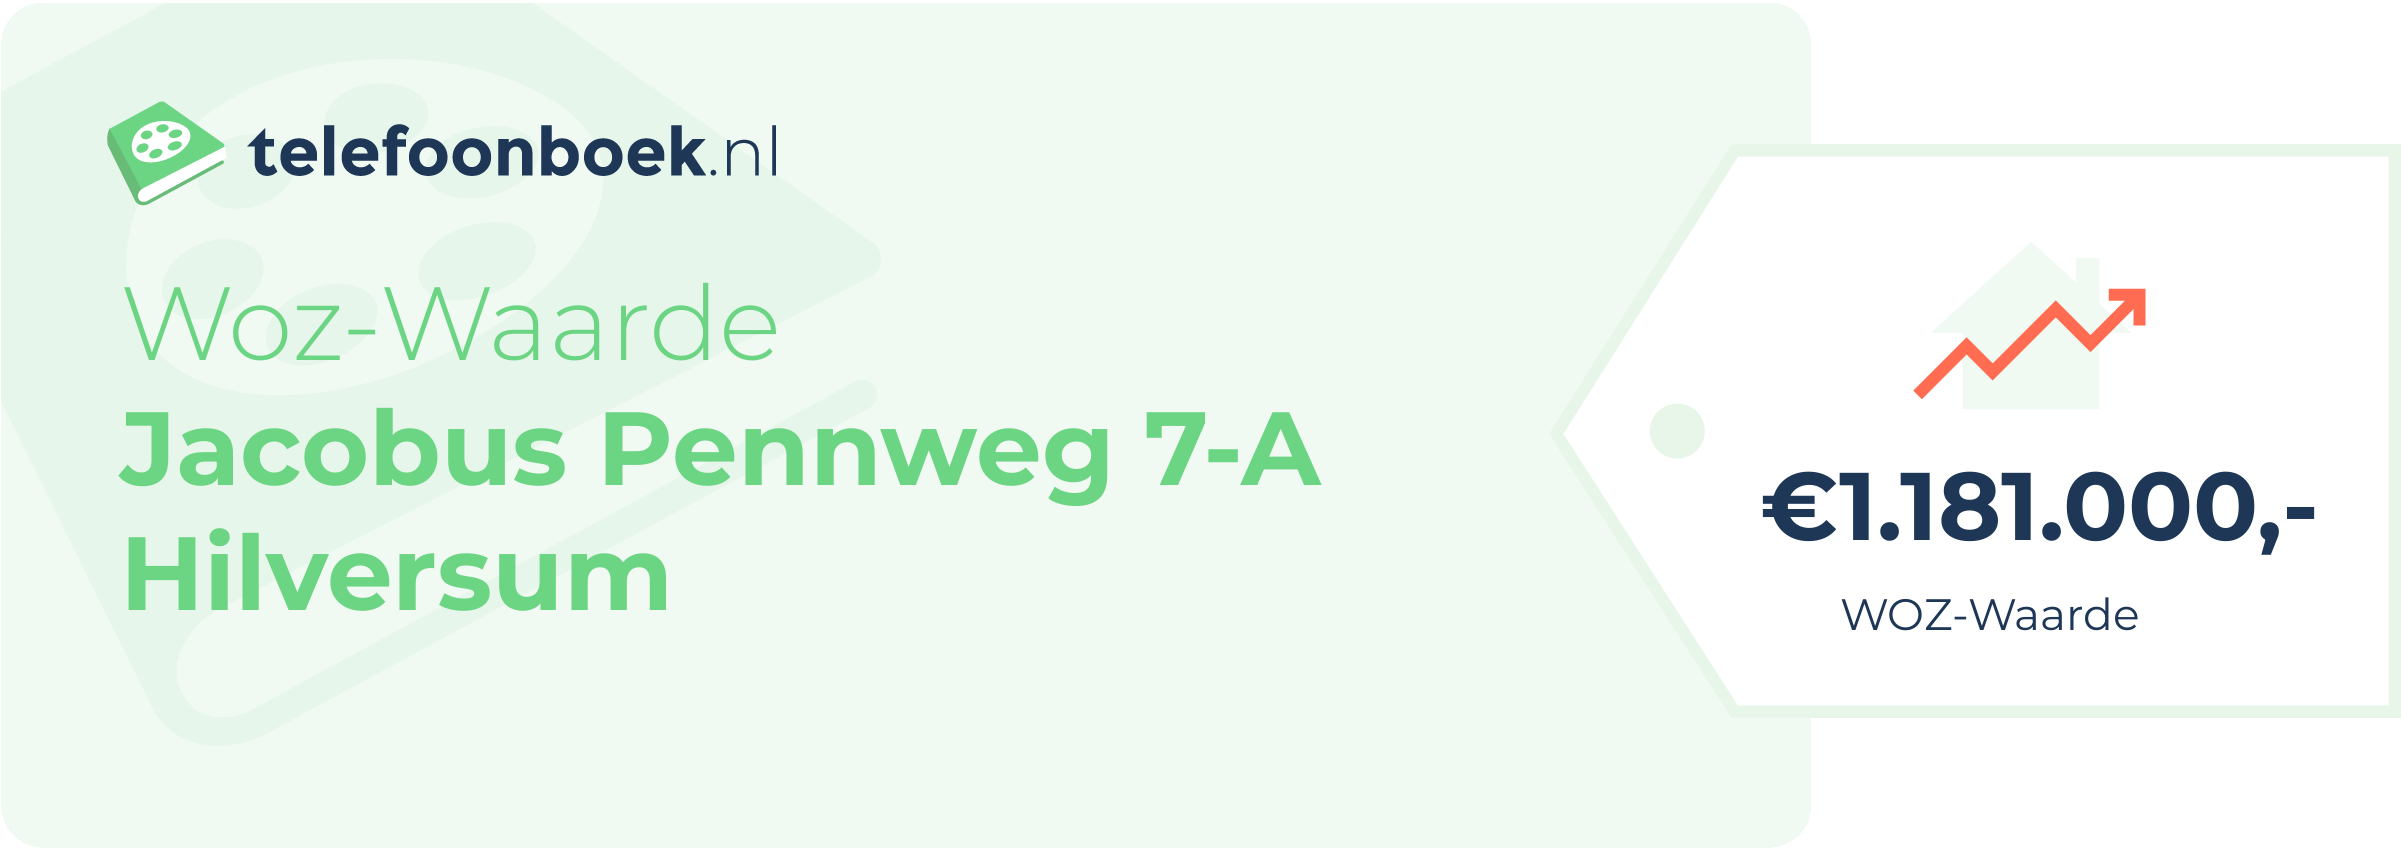 WOZ-waarde Jacobus Pennweg 7-A Hilversum